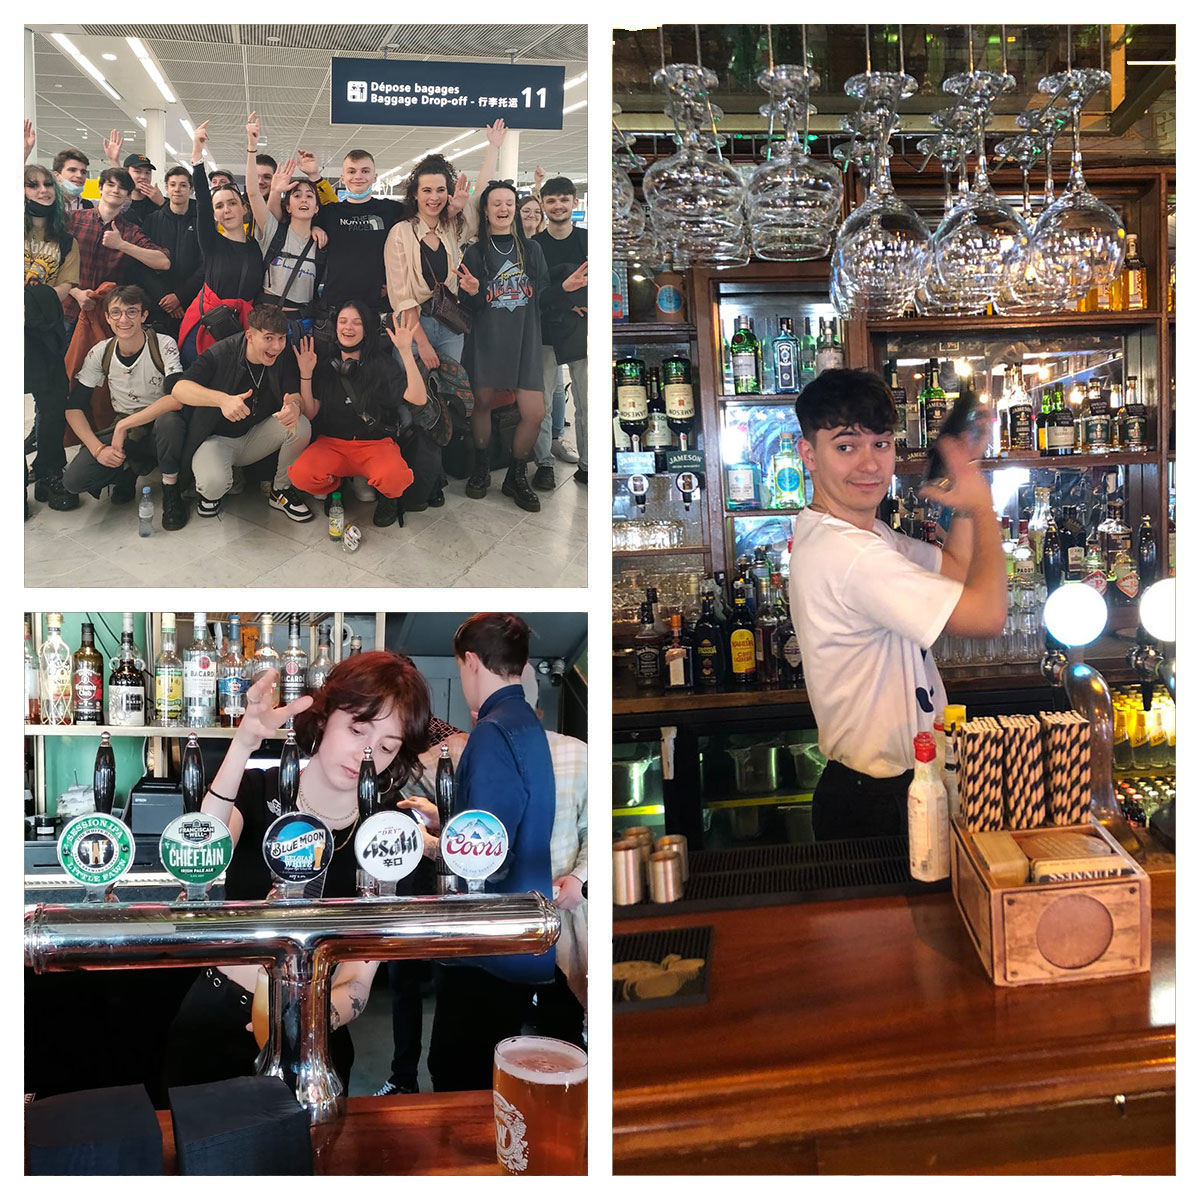 Les Barman en Irlande